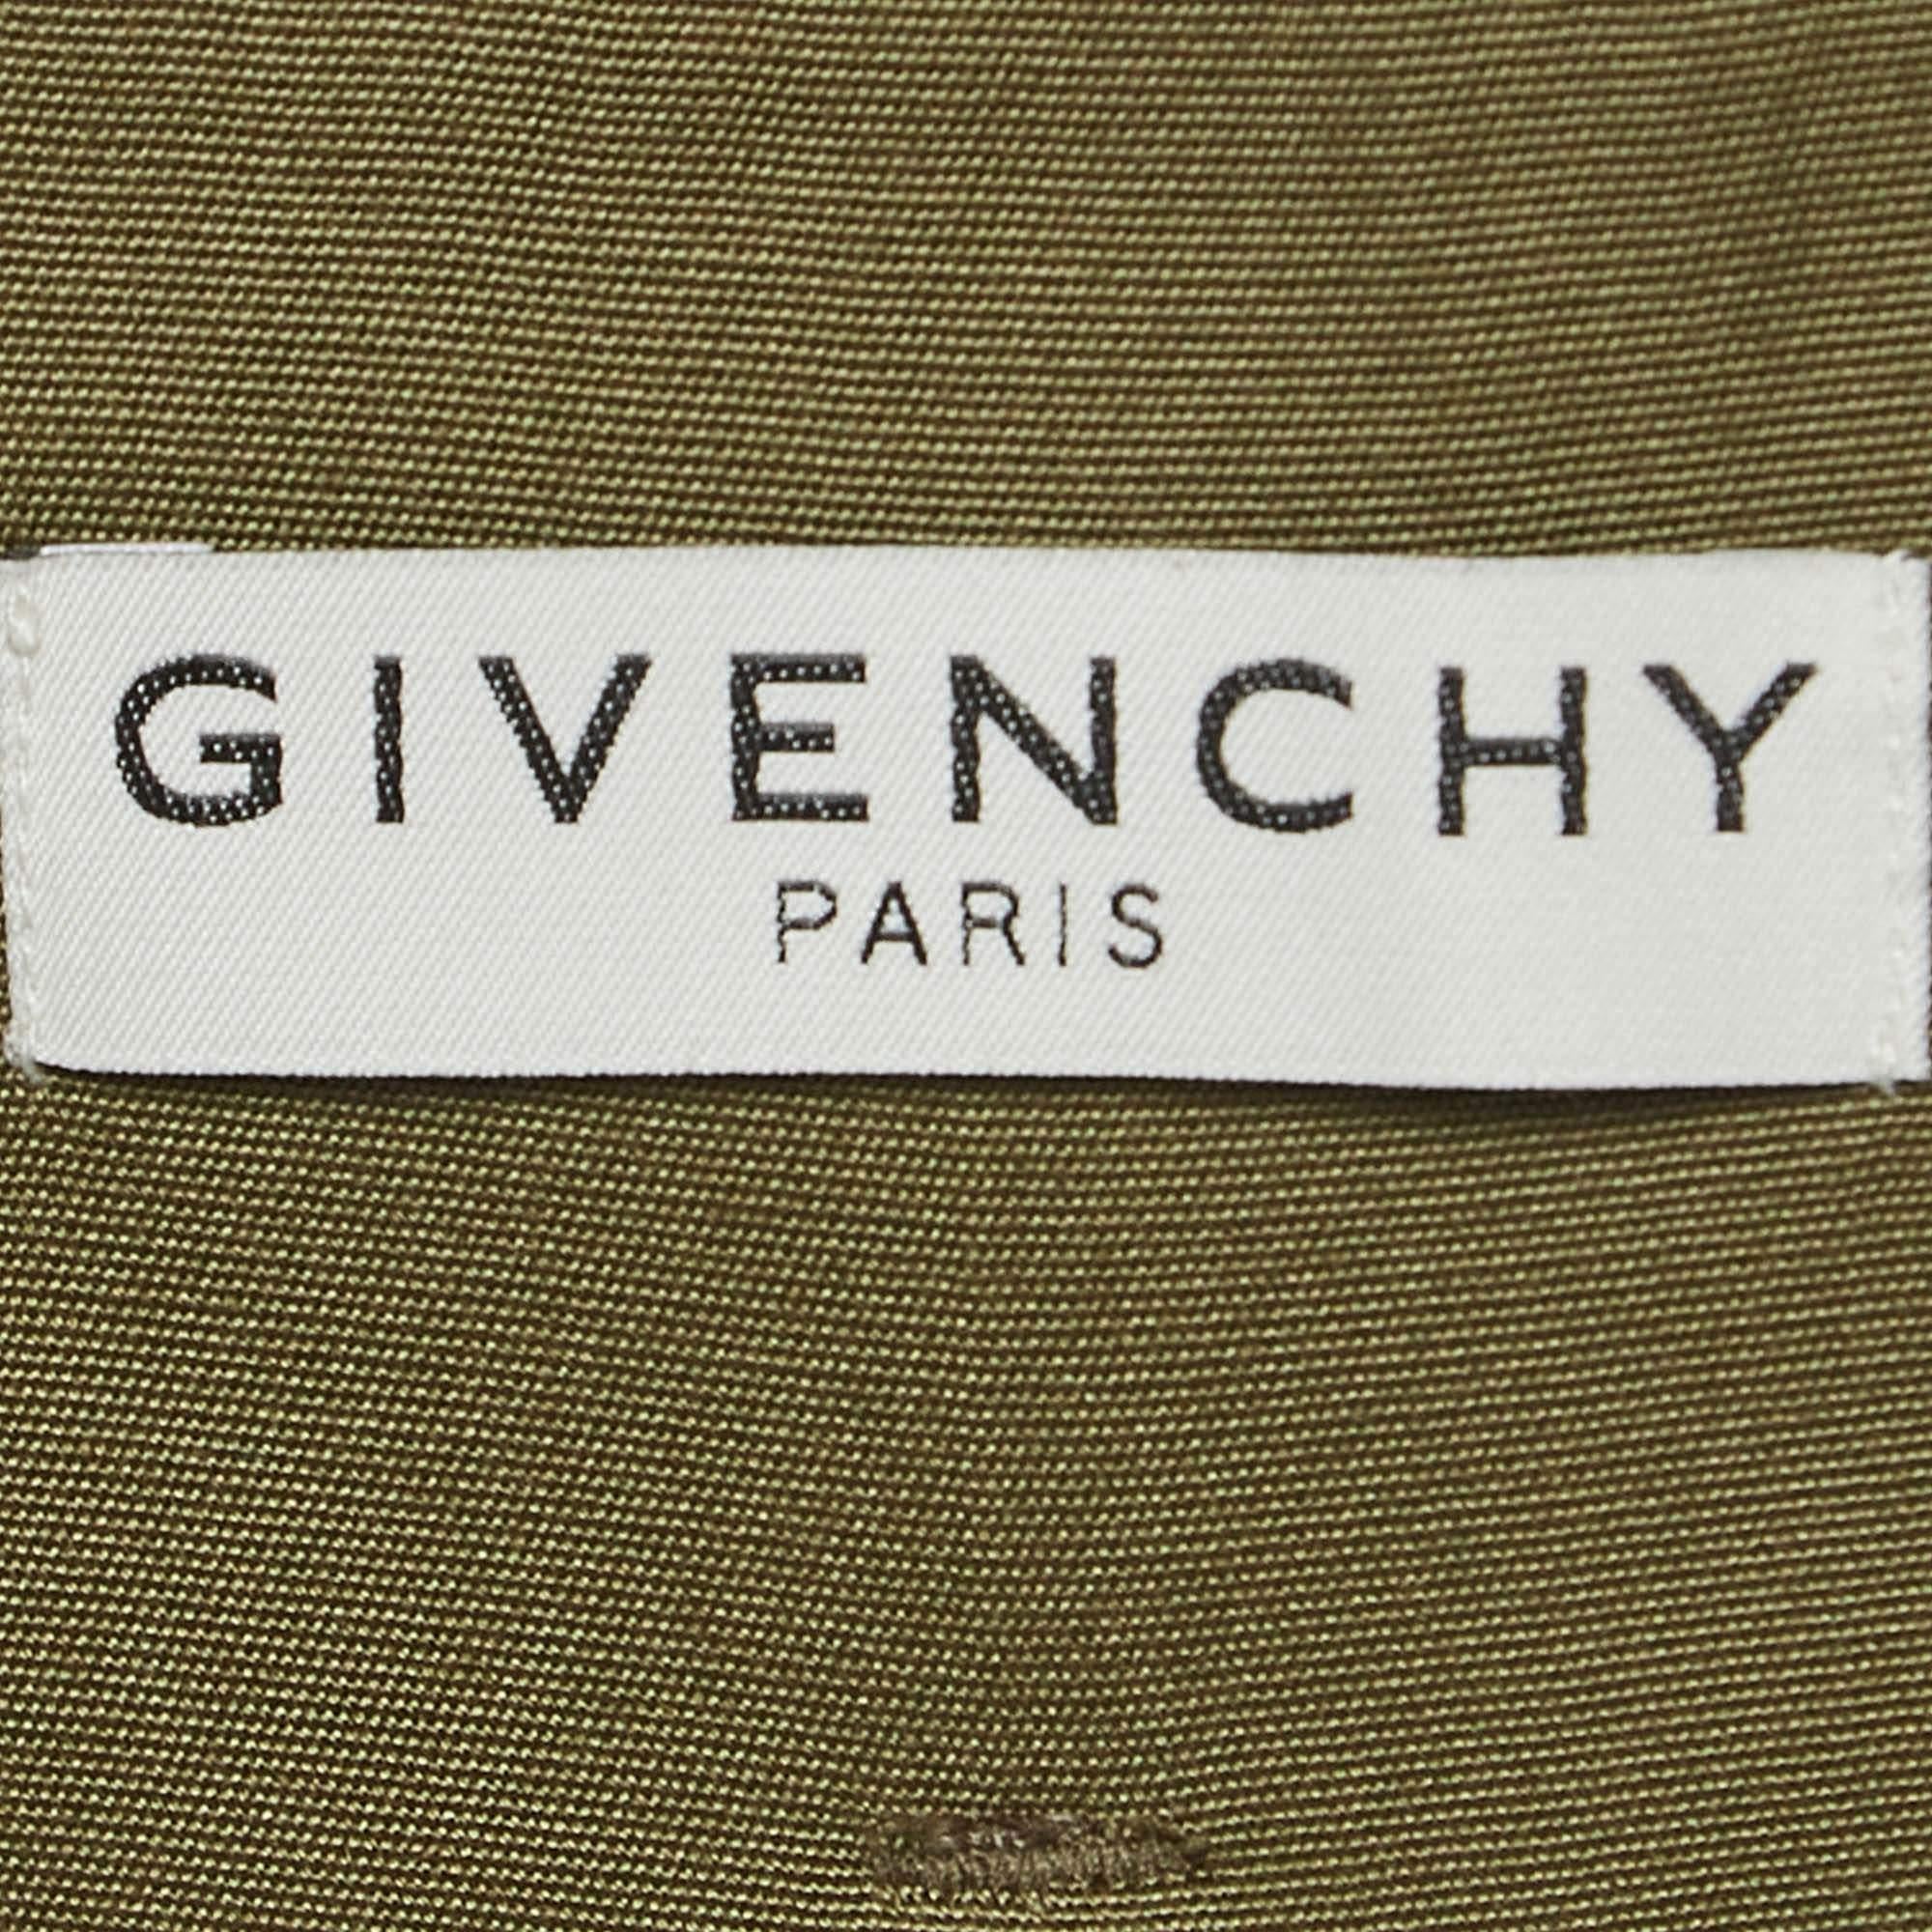 Le pantalon Givenchy est un gage de sophistication. Méticuleusement taillé dans les matières les plus nobles, ce pantalon illustre un savoir-faire impeccable, offrant un style intemporel et le plus grand confort pour votre élégance de tous les